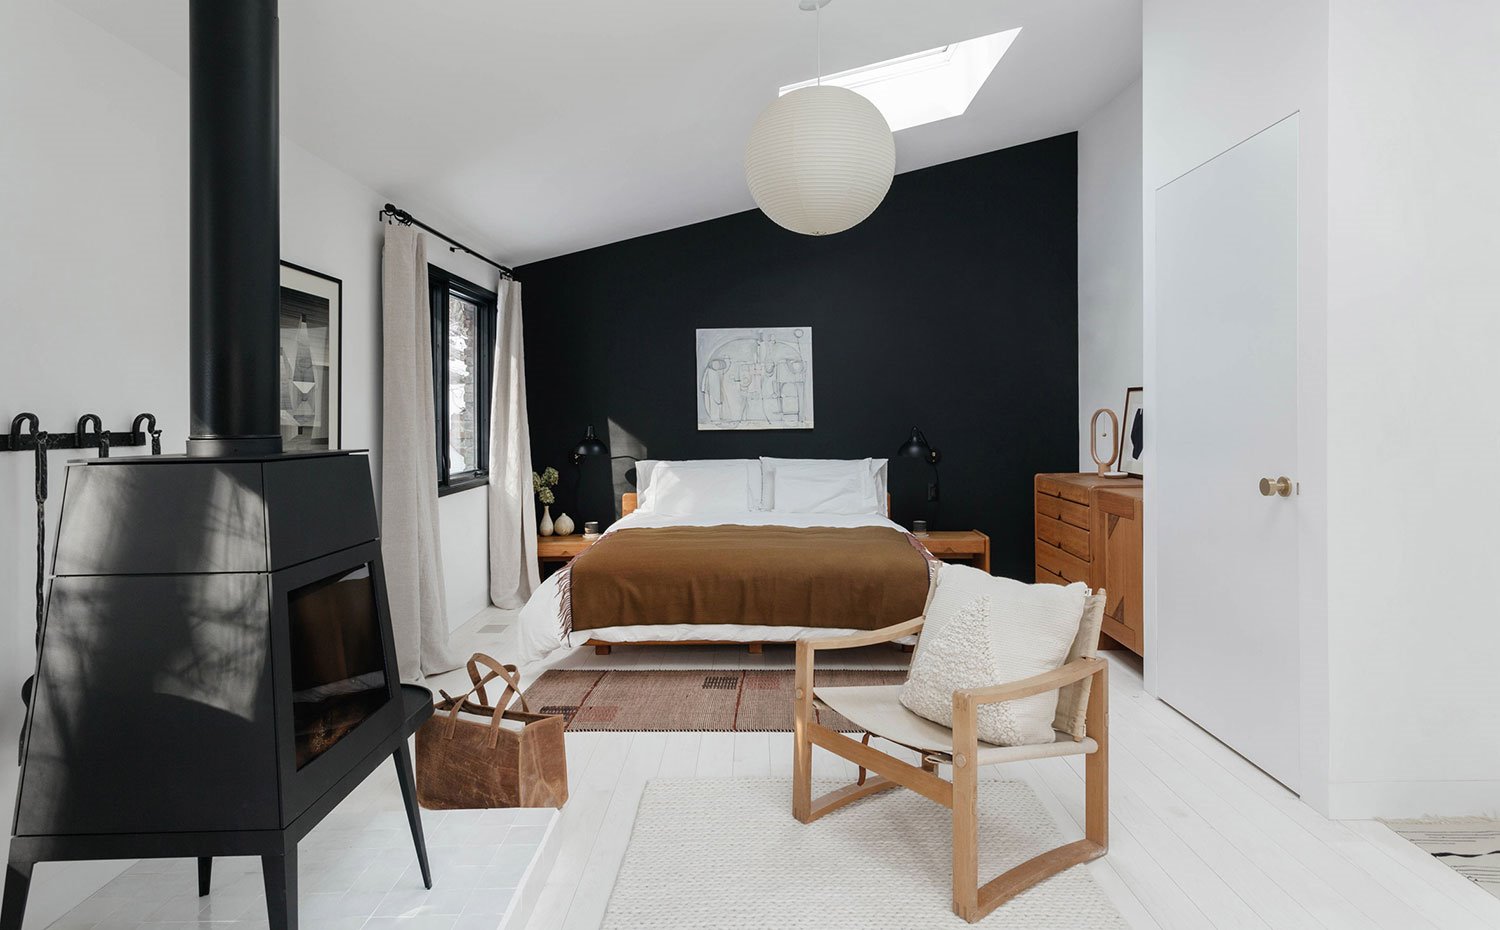 Dormitorio con chimenea en hierro fundido, pared en negro, luminaria esférica